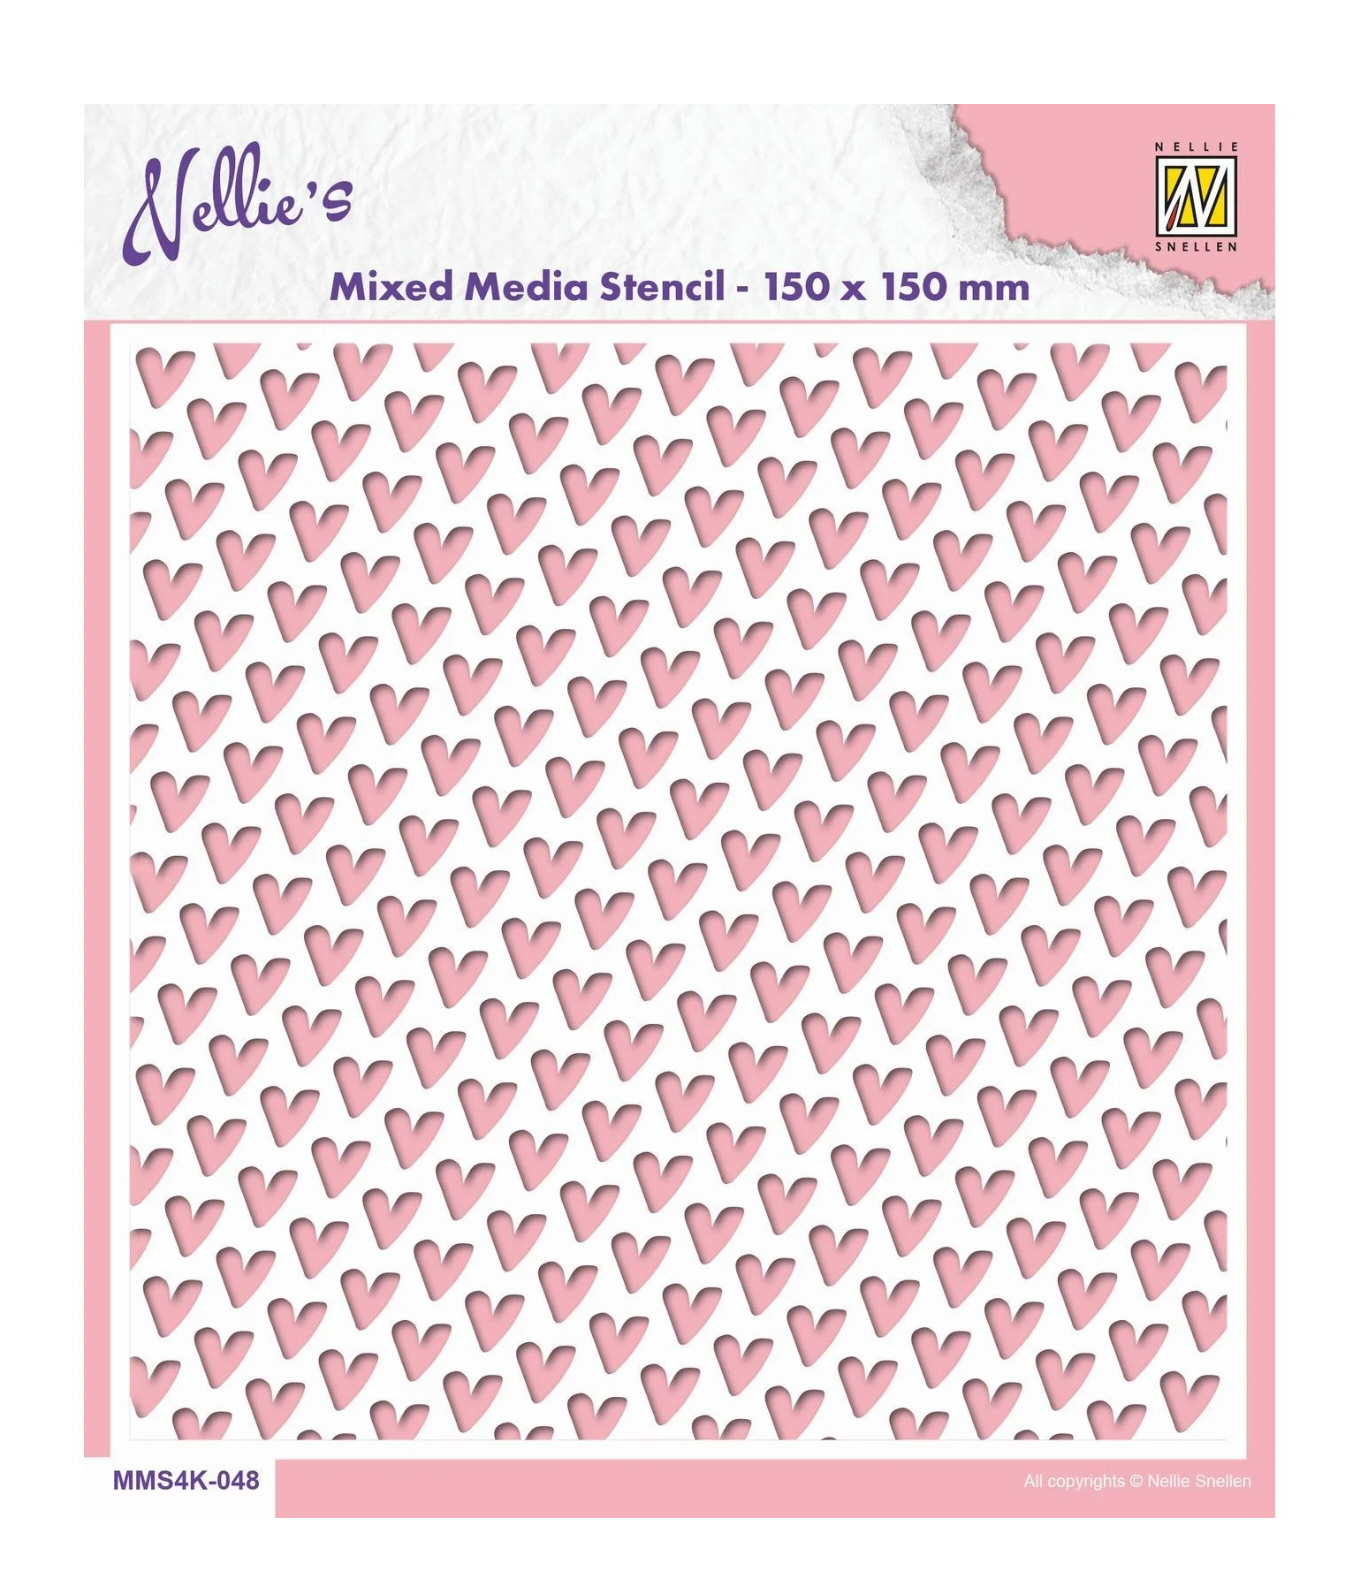 Nellie Snellen Schablone Herzen Hintergrund 15x15cm